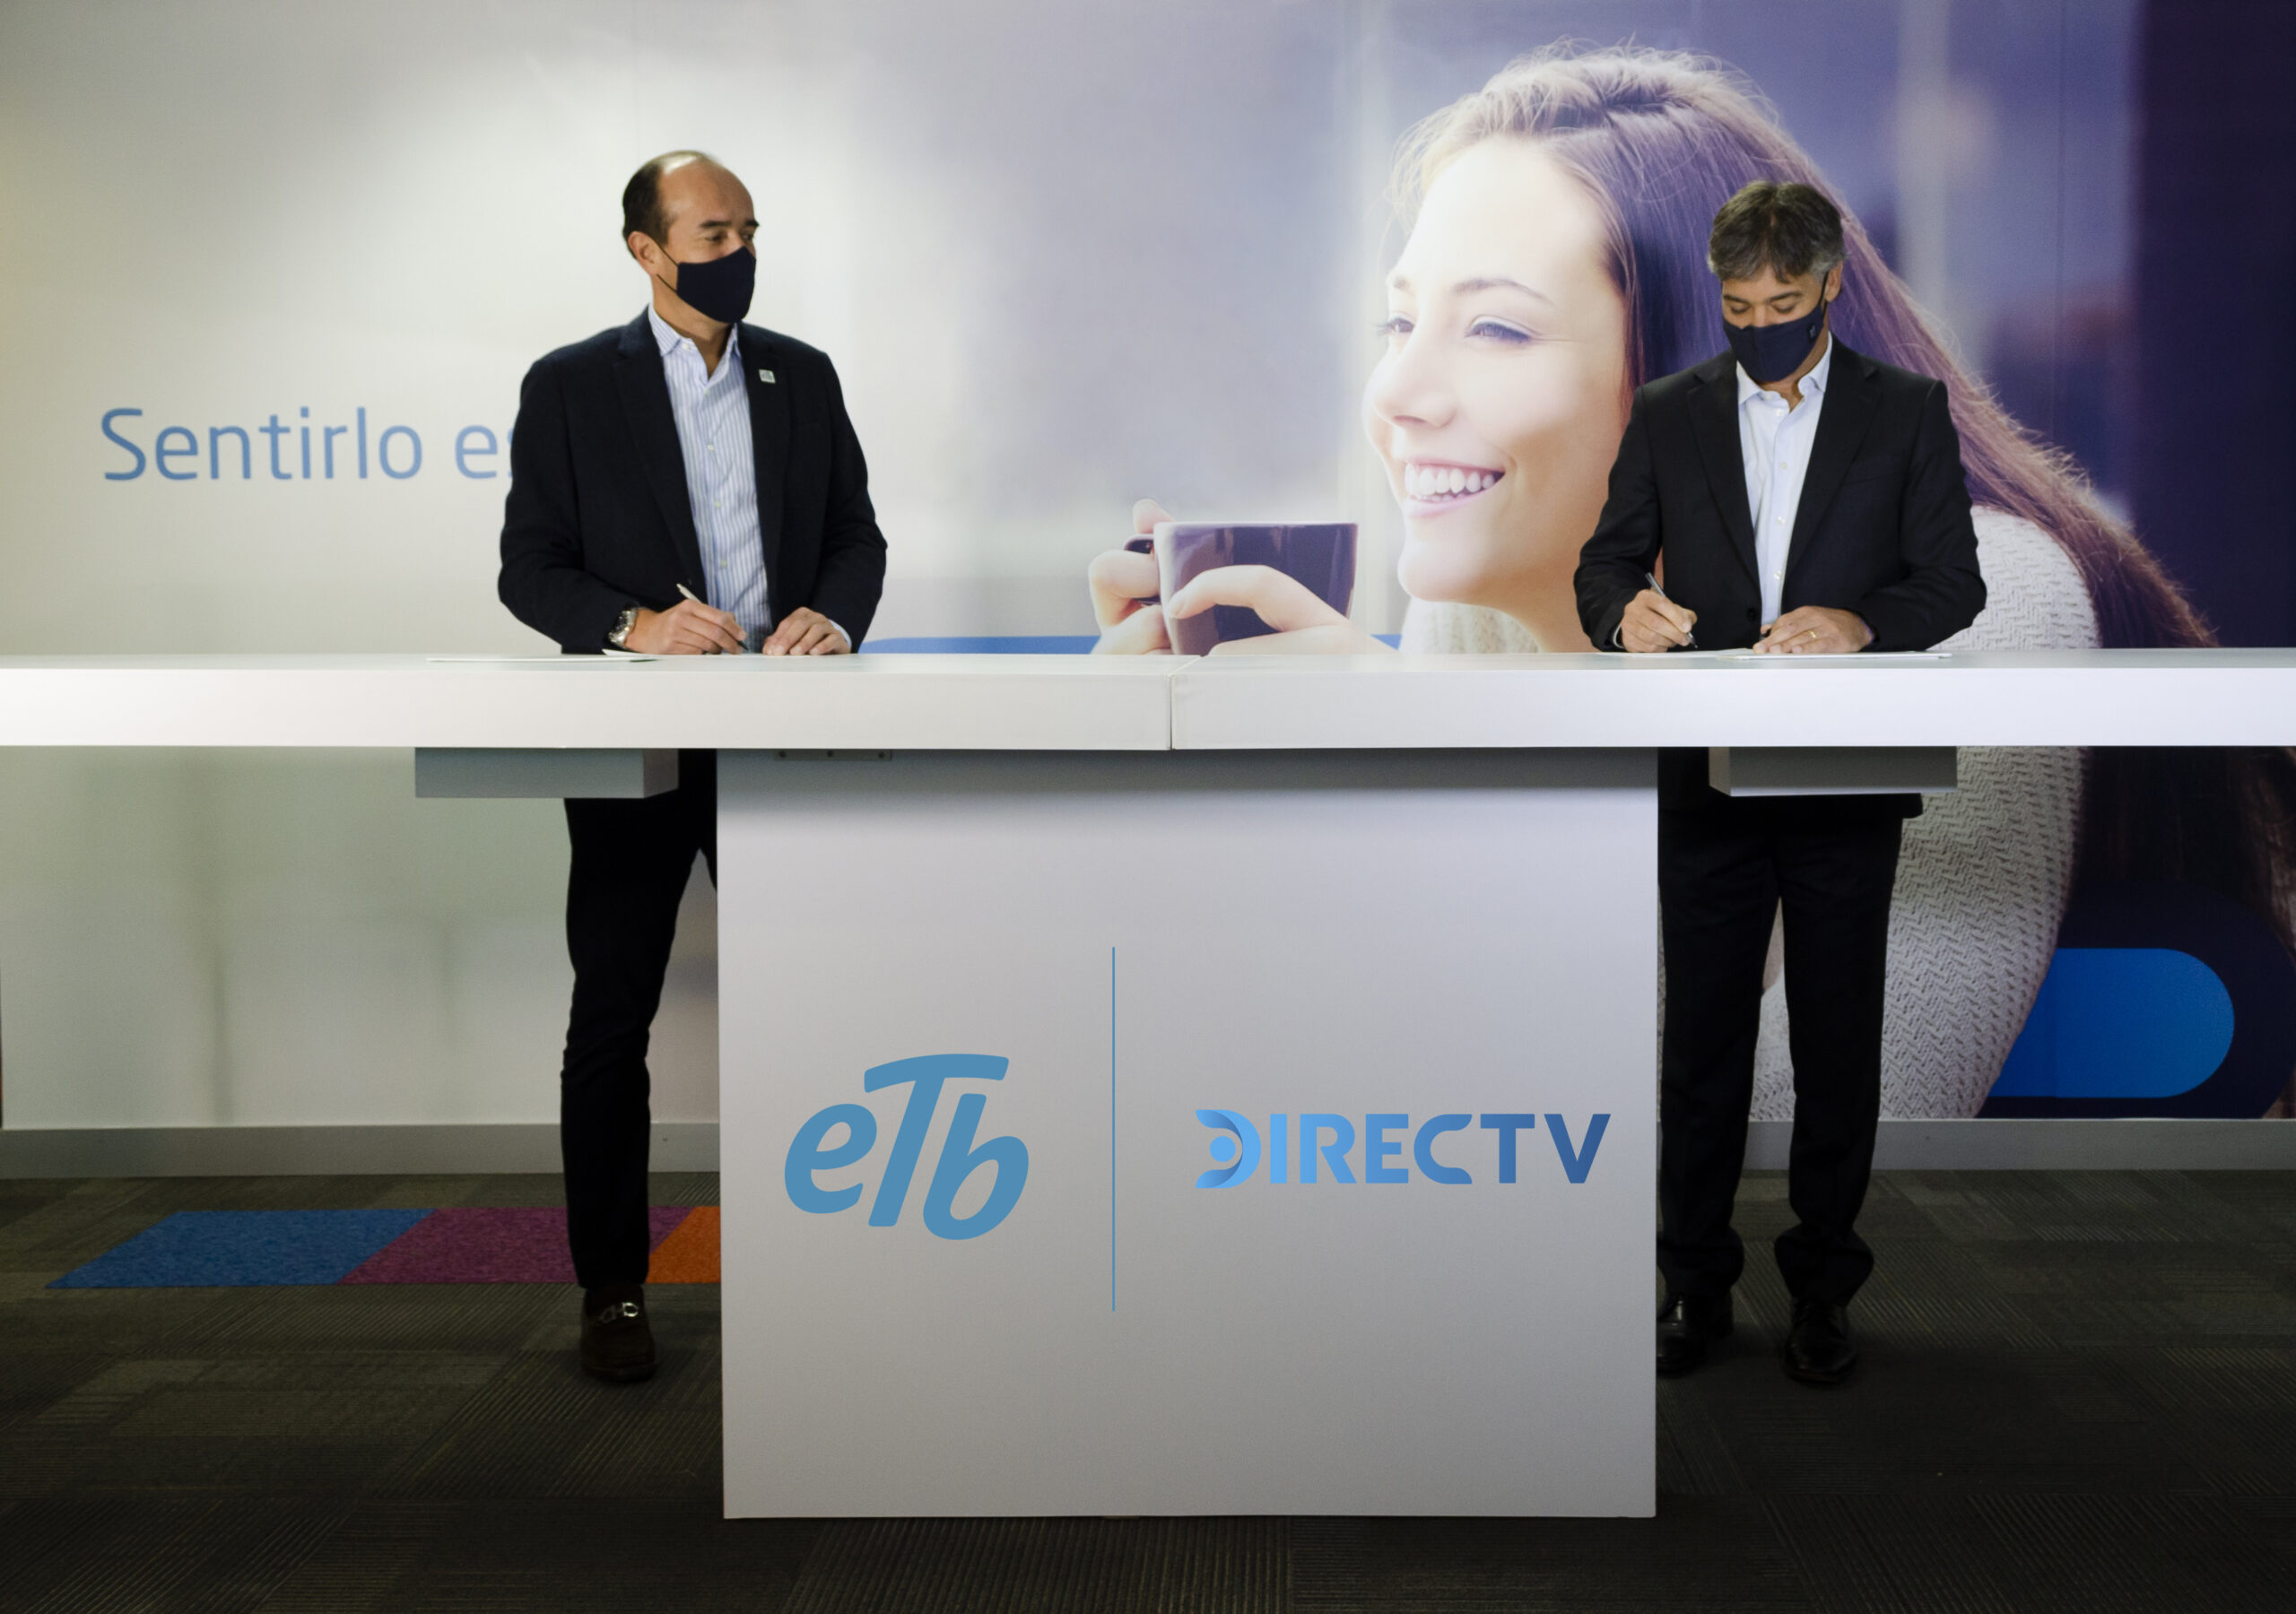 ETB y DIRECTV, dos de las principales compañías de telecomunicaciones del país, firmaron una alianza comercial estratégica que les permitirá ofrecer un portafolio